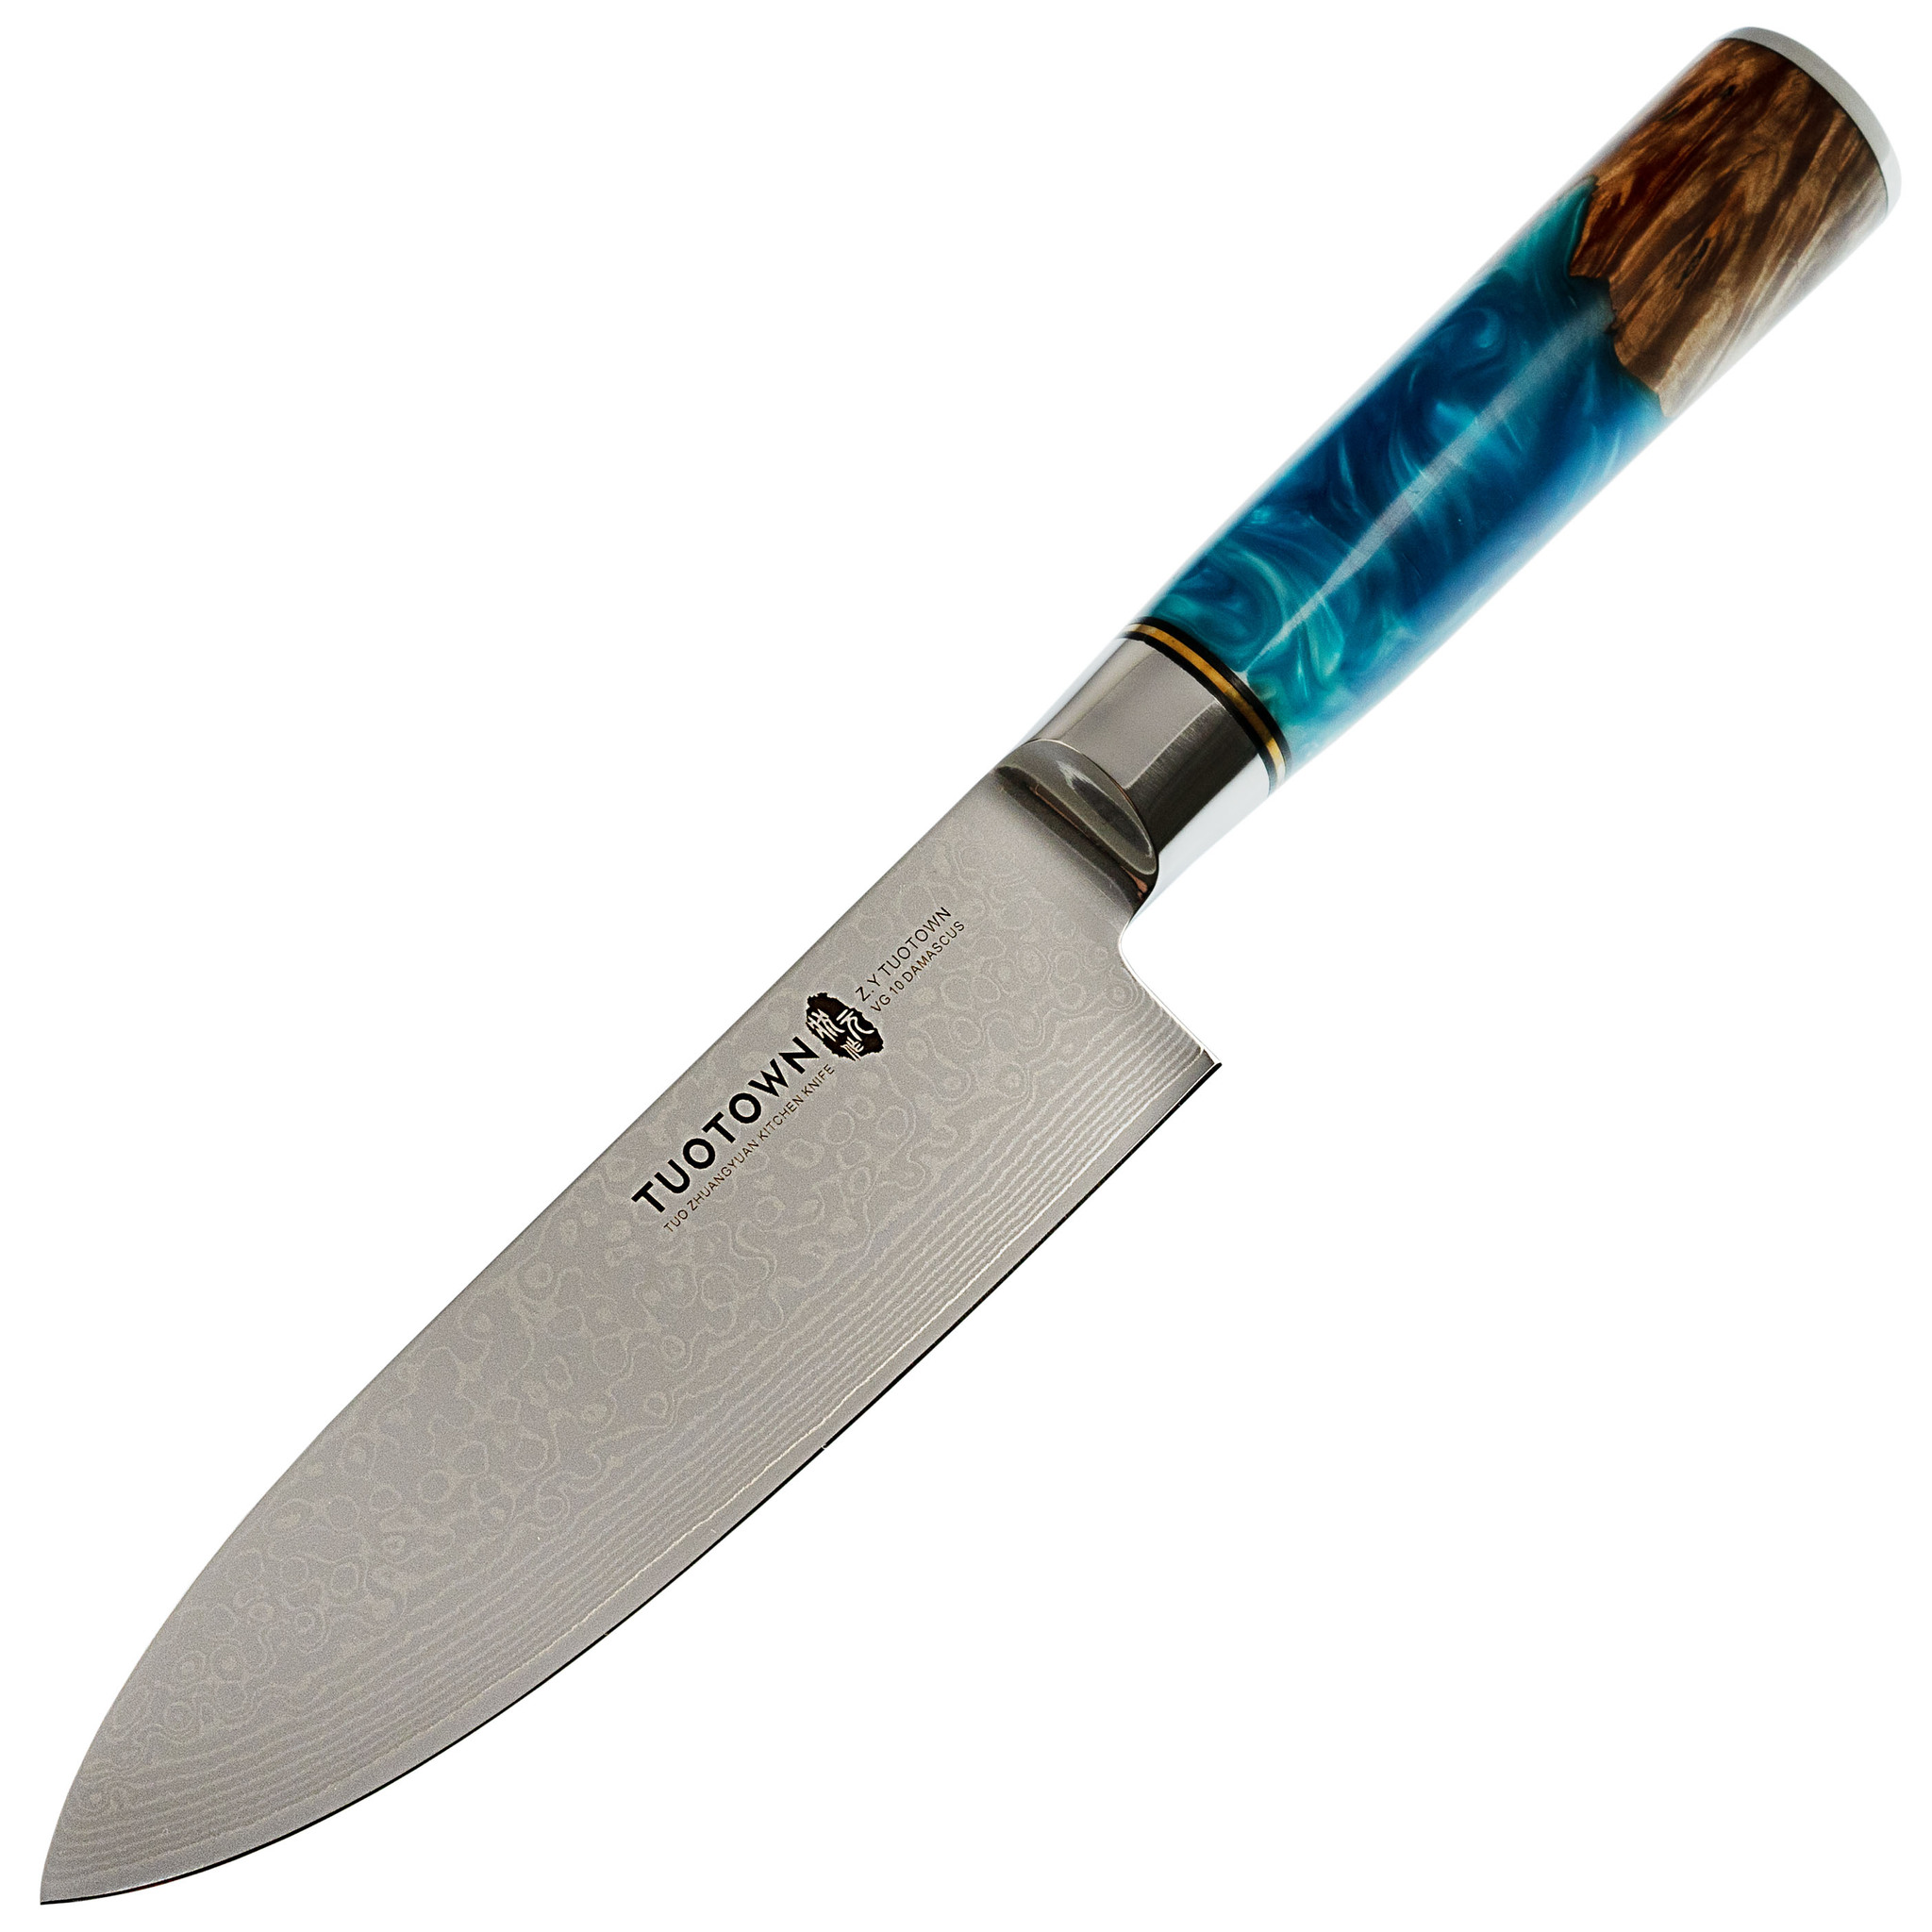 Кухонный нож Tuotown, сталь VG10 Damascus, рукоять дерево/эпоксидка - фото 1